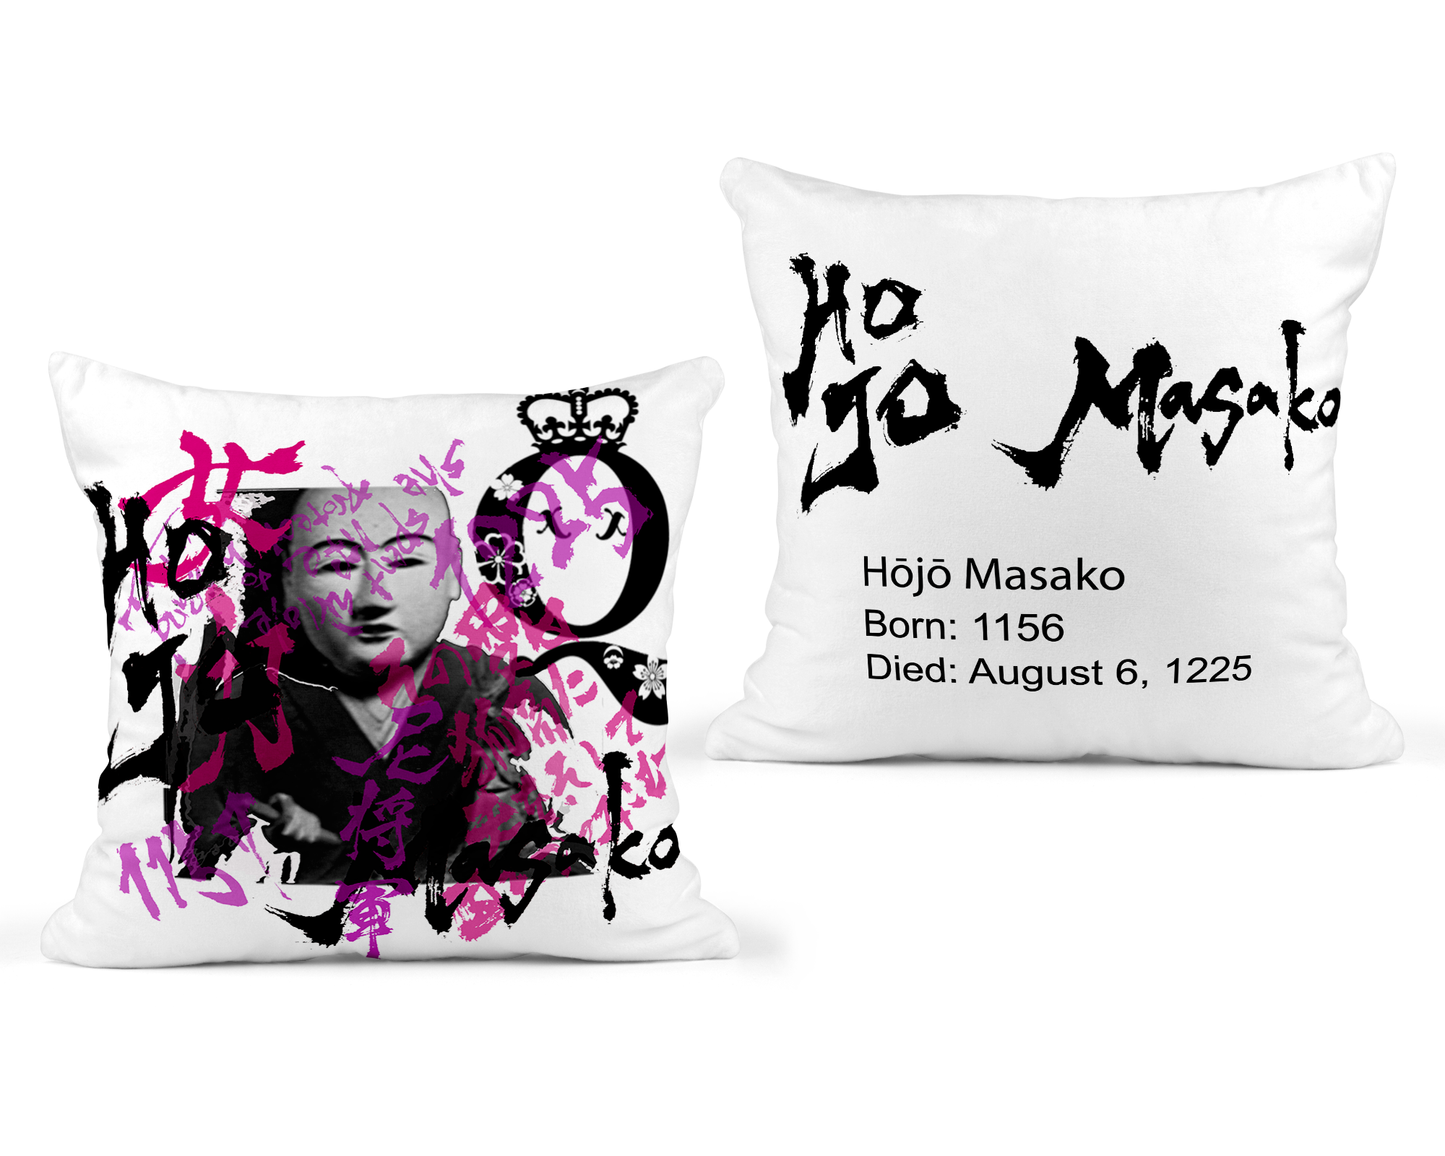 Hojo Masako White Throw Pillow 18x18